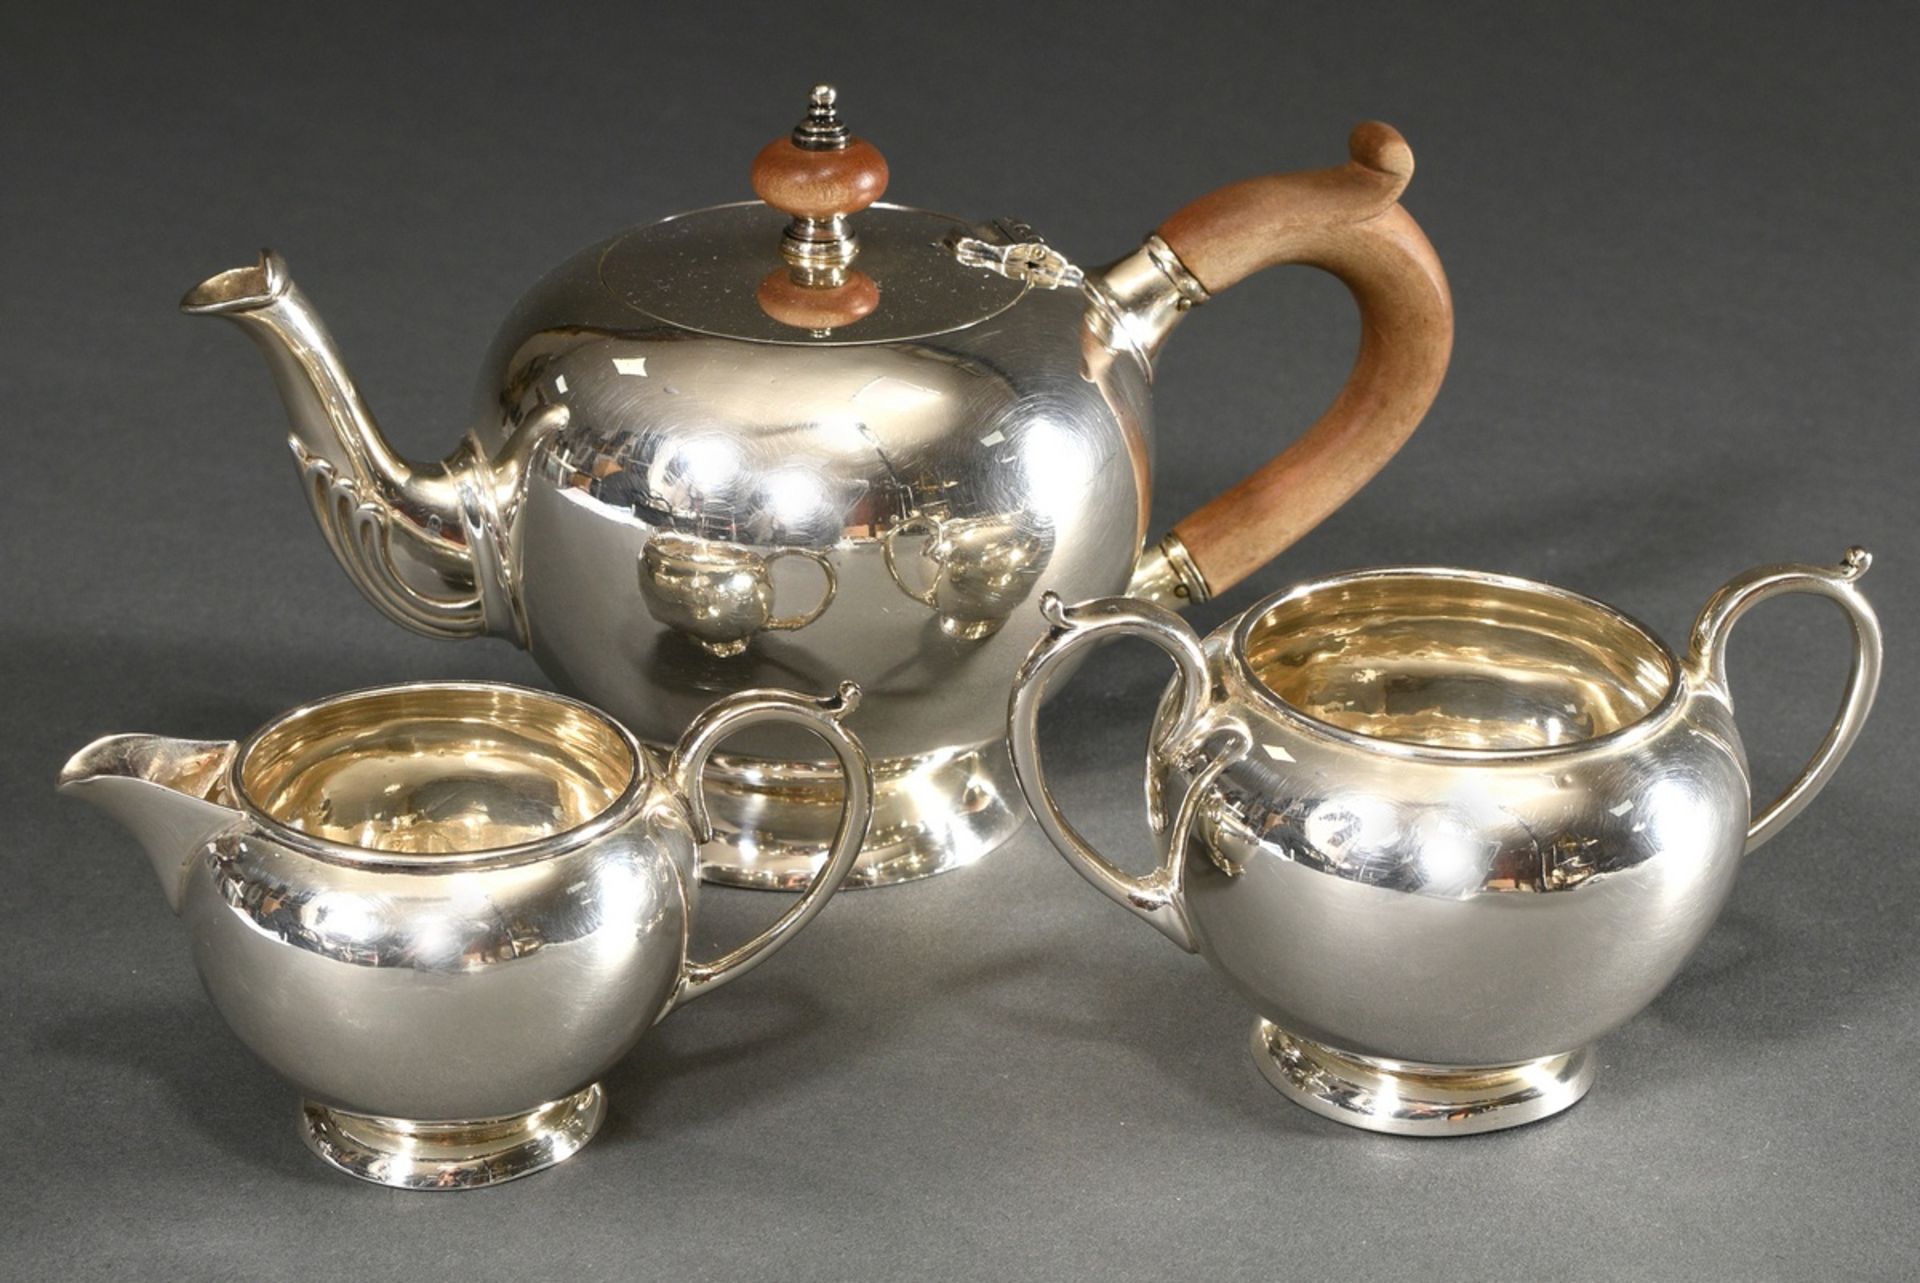 3 Teile englisches Teeset in George II Form: Teekanne mit Holz Handhabe und zwei Teile Zucker und R